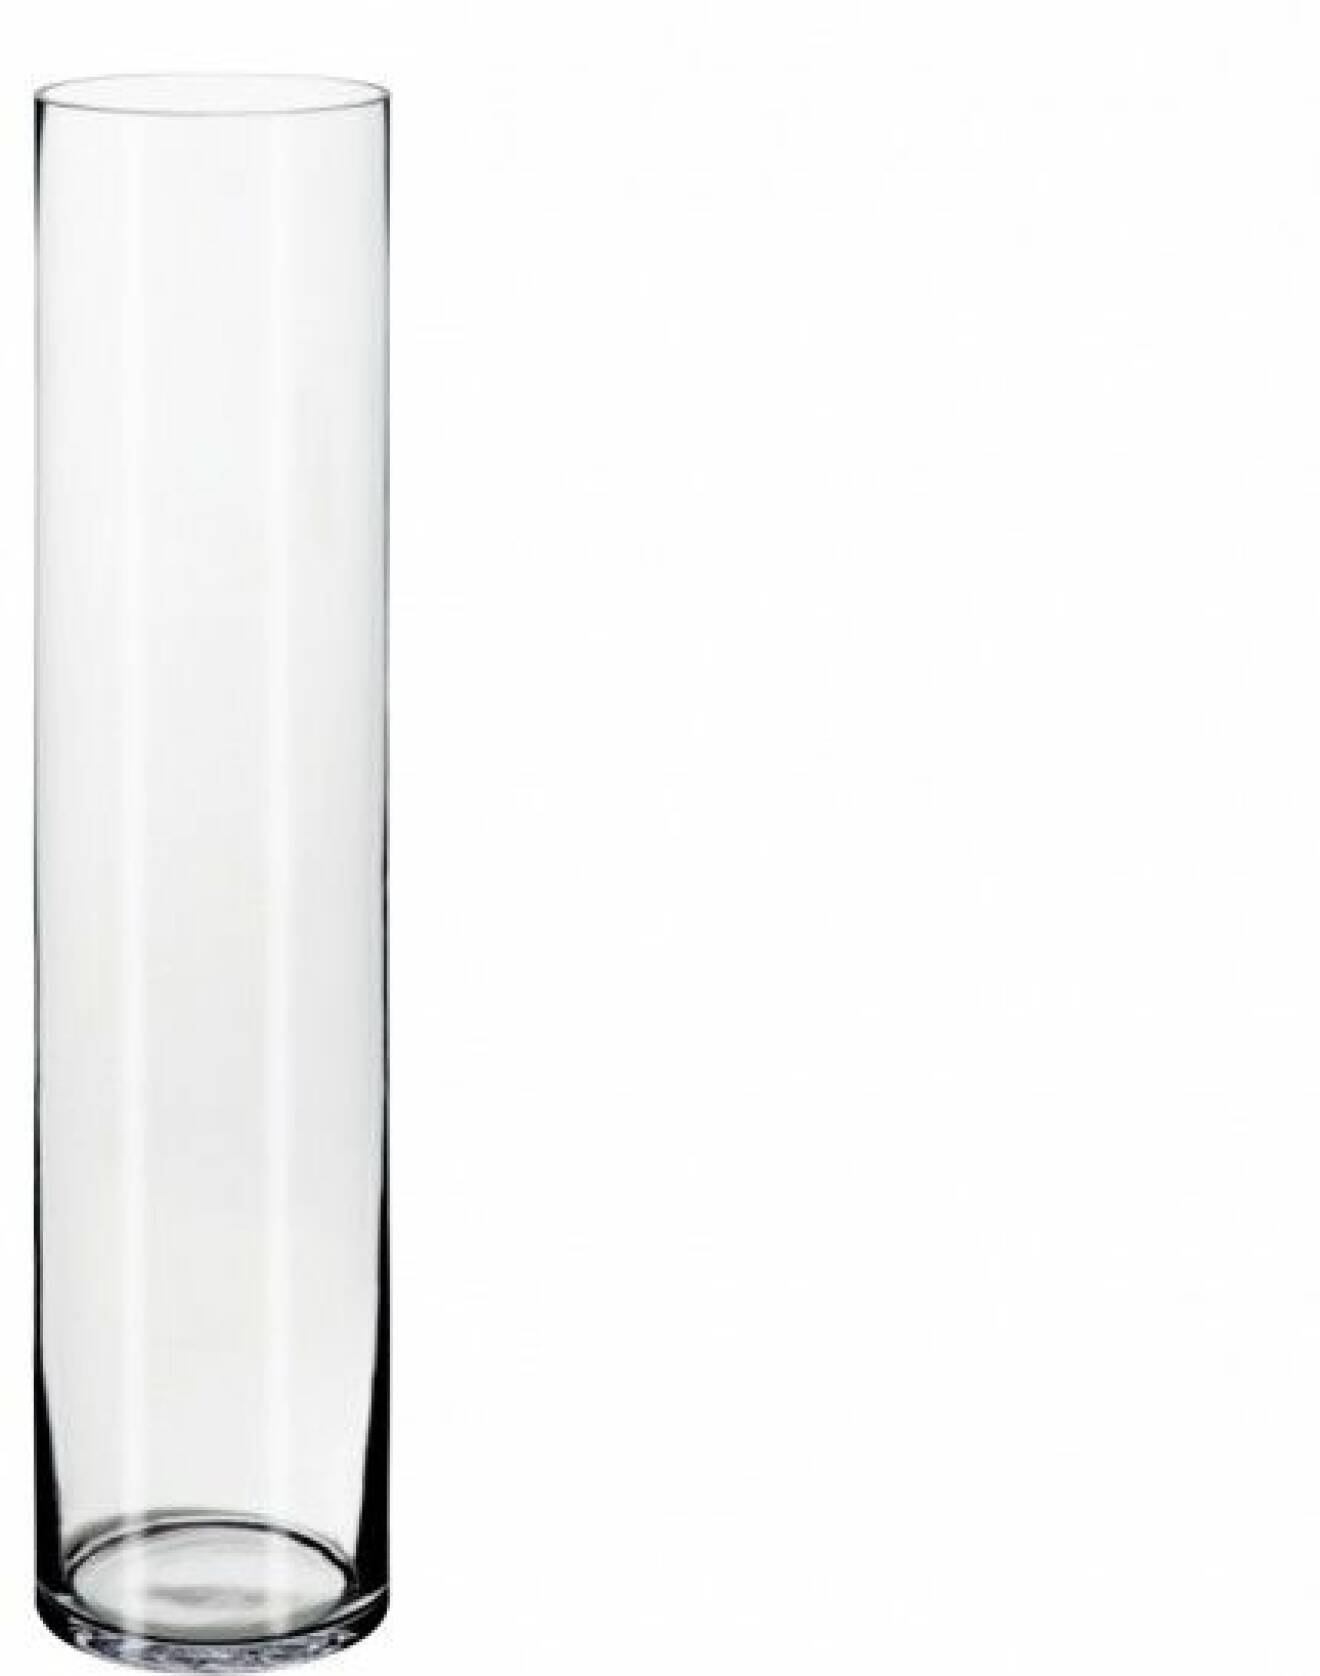  Munblåst vas Cylinder, höjd 68 cm, 199 kr, Ikea.  